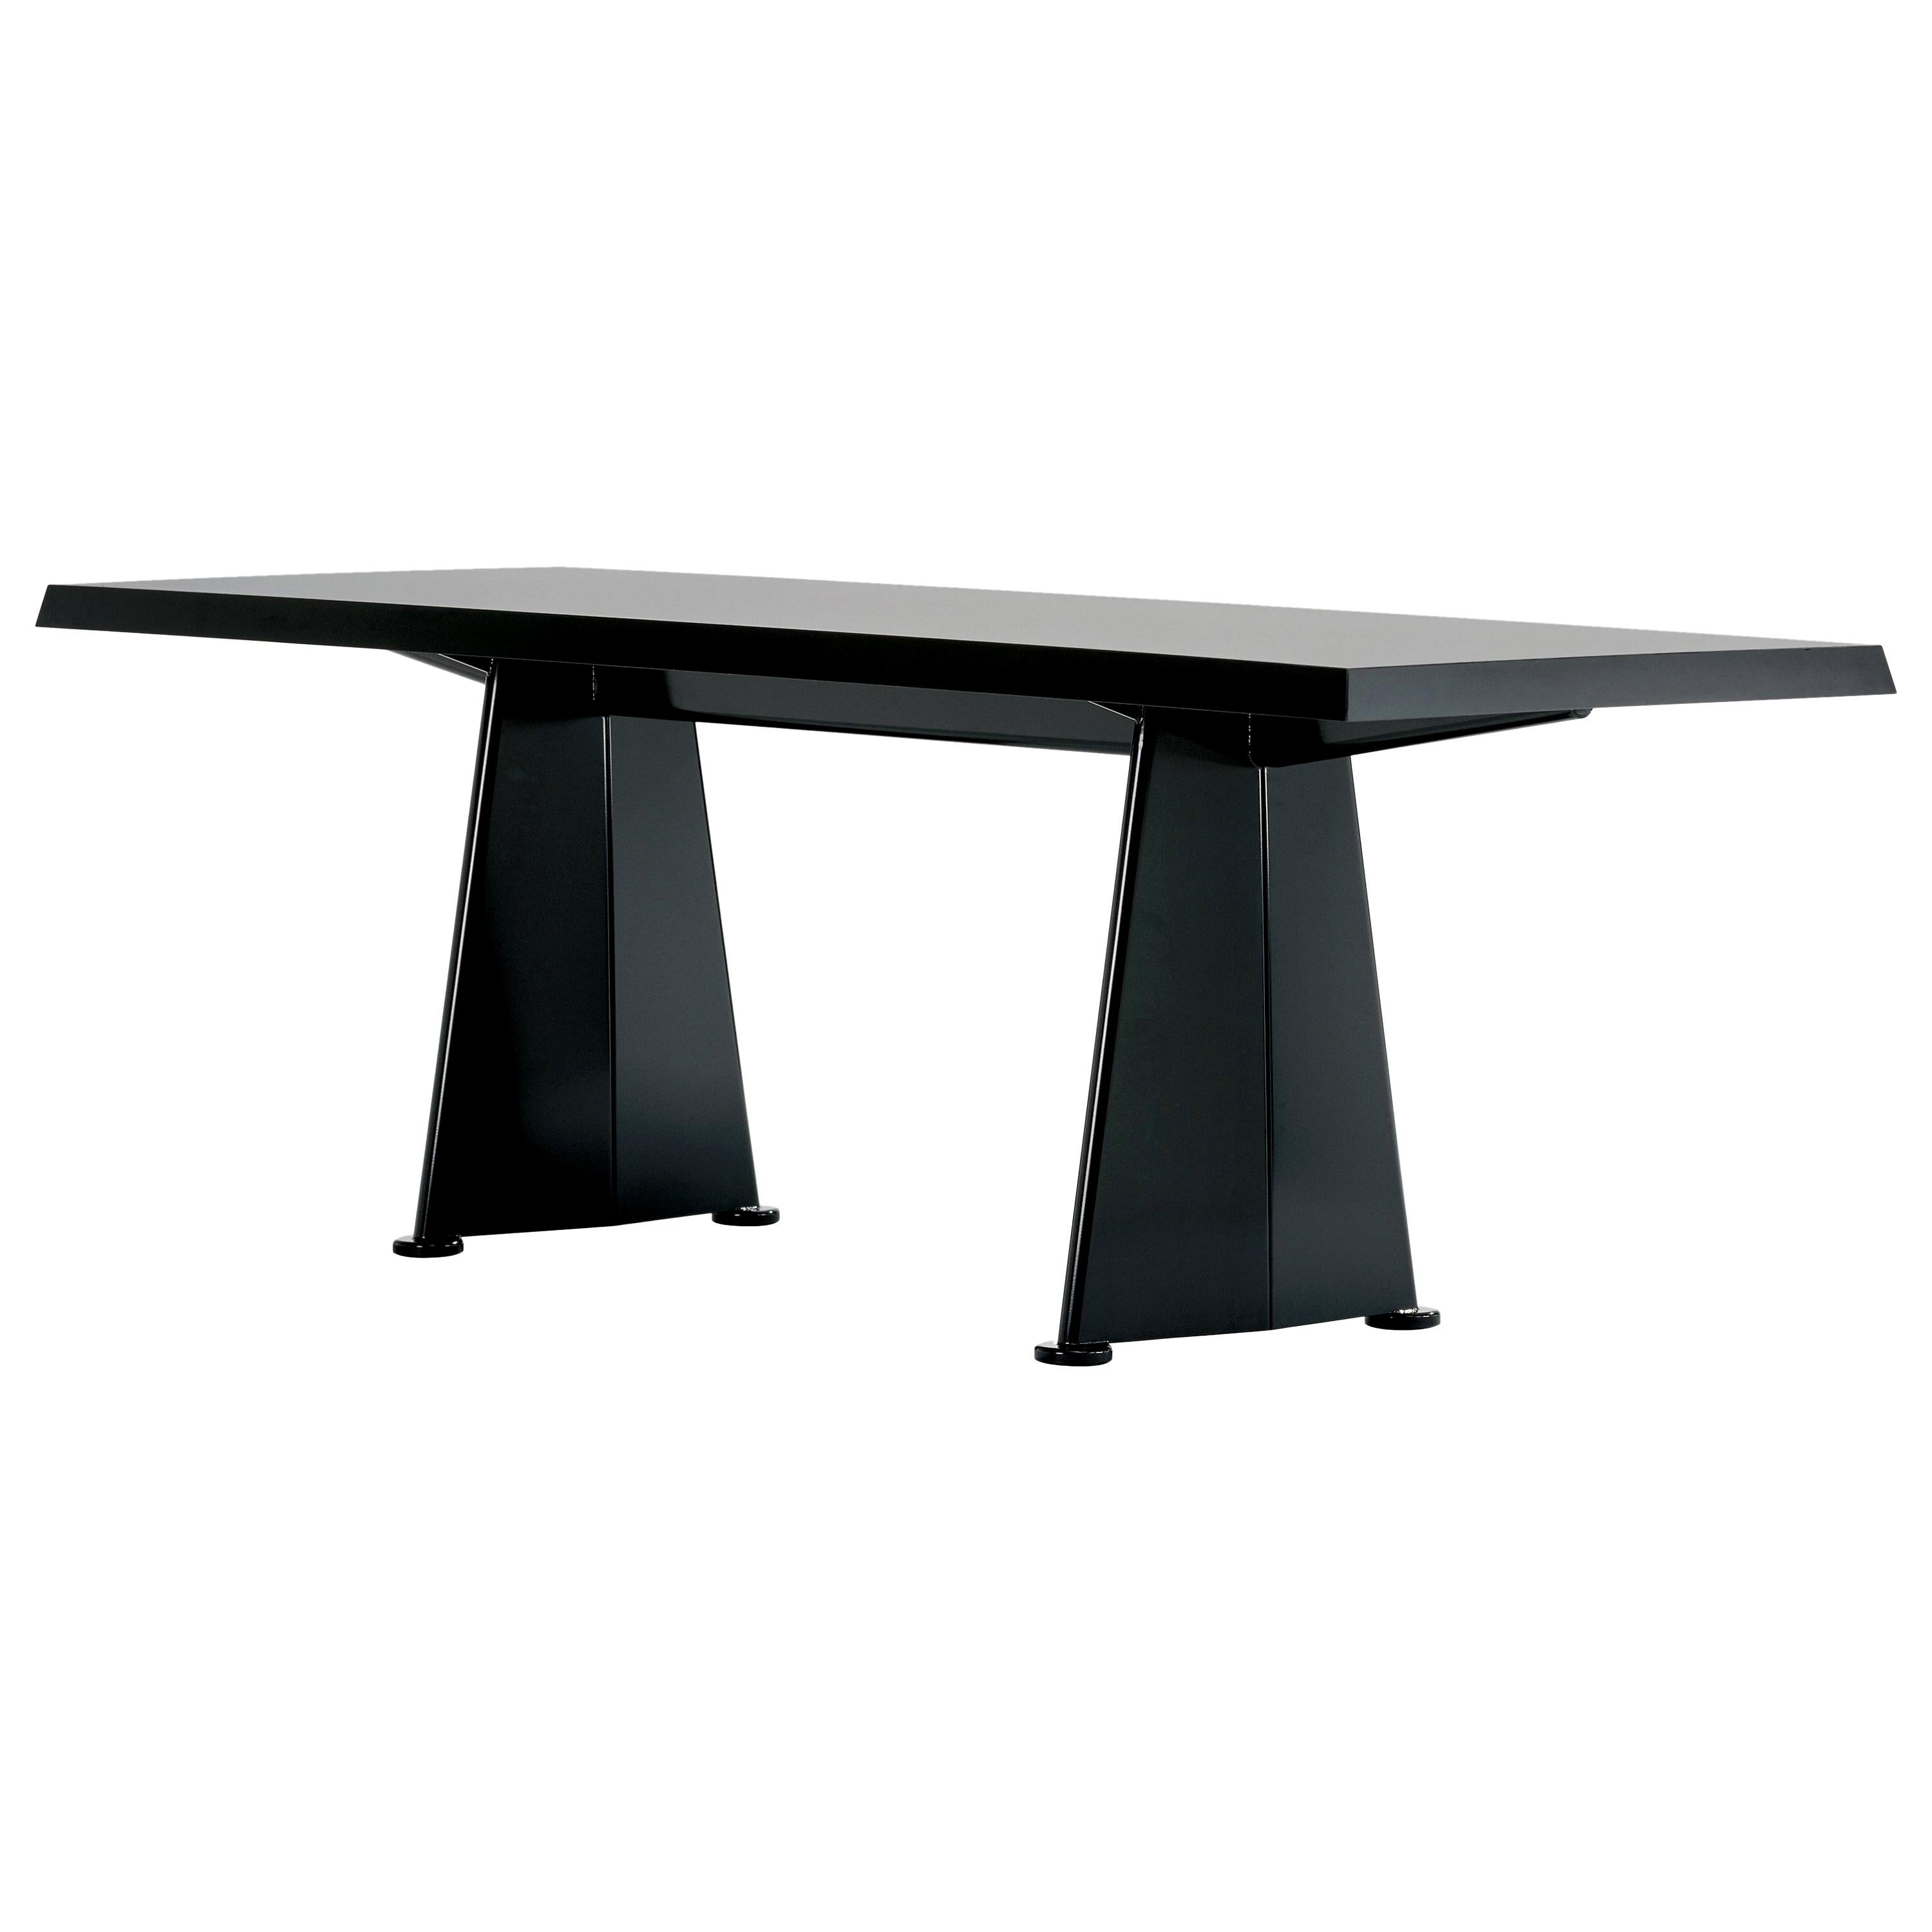 Vitra Trapèze Table in Black by Jean Prouvé